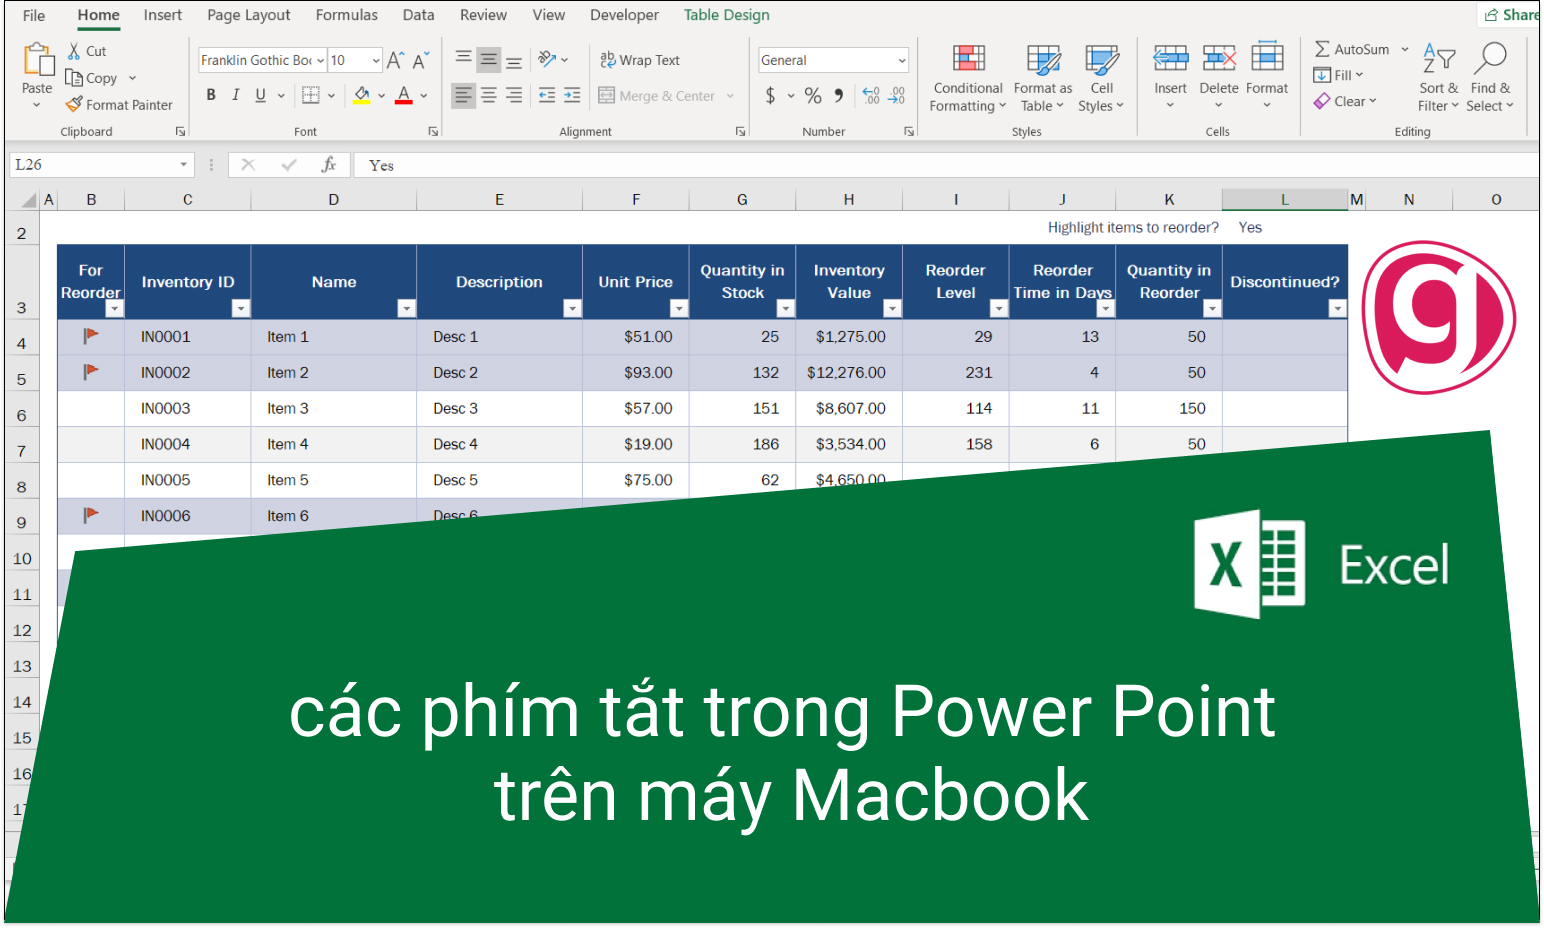 Hướng dẫn cách sử dụng powerpoint trên macbook đơn giản và hiệu quả